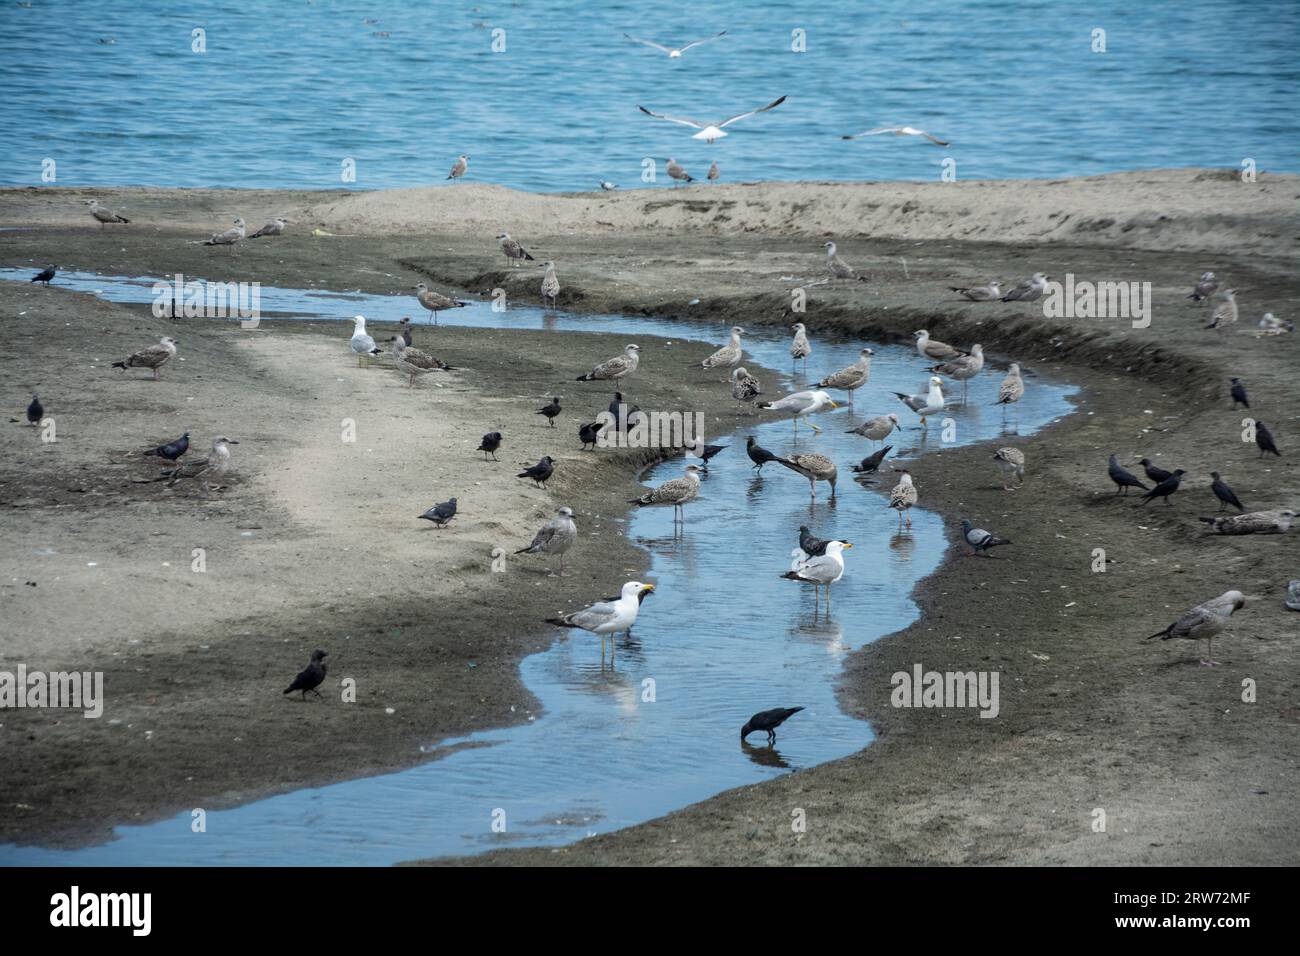 Différents types d'oiseaux et d'oiseaux marins - goélands de la mer Caspienne, goélands à pattes jaunes, pigeons et corbeaux, assis près d'une tranchée d'eau sur une plage au bord de la mer. Hori Banque D'Images